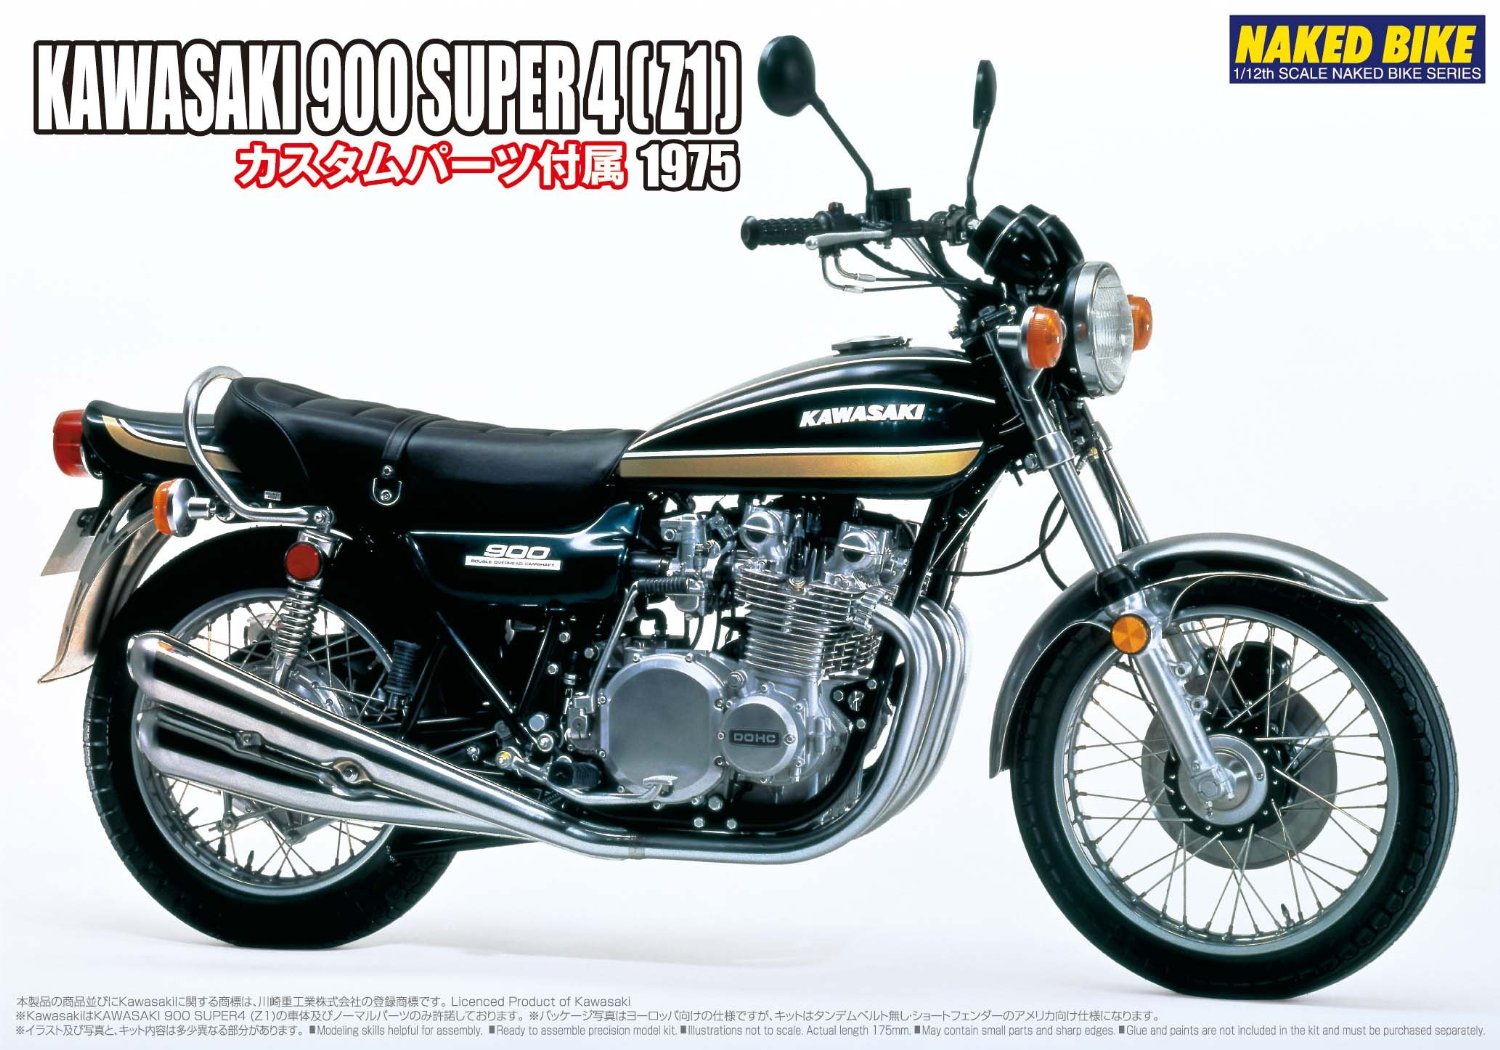 NB82 1975 Kawasaki 900 Super 4 Z1 1/12